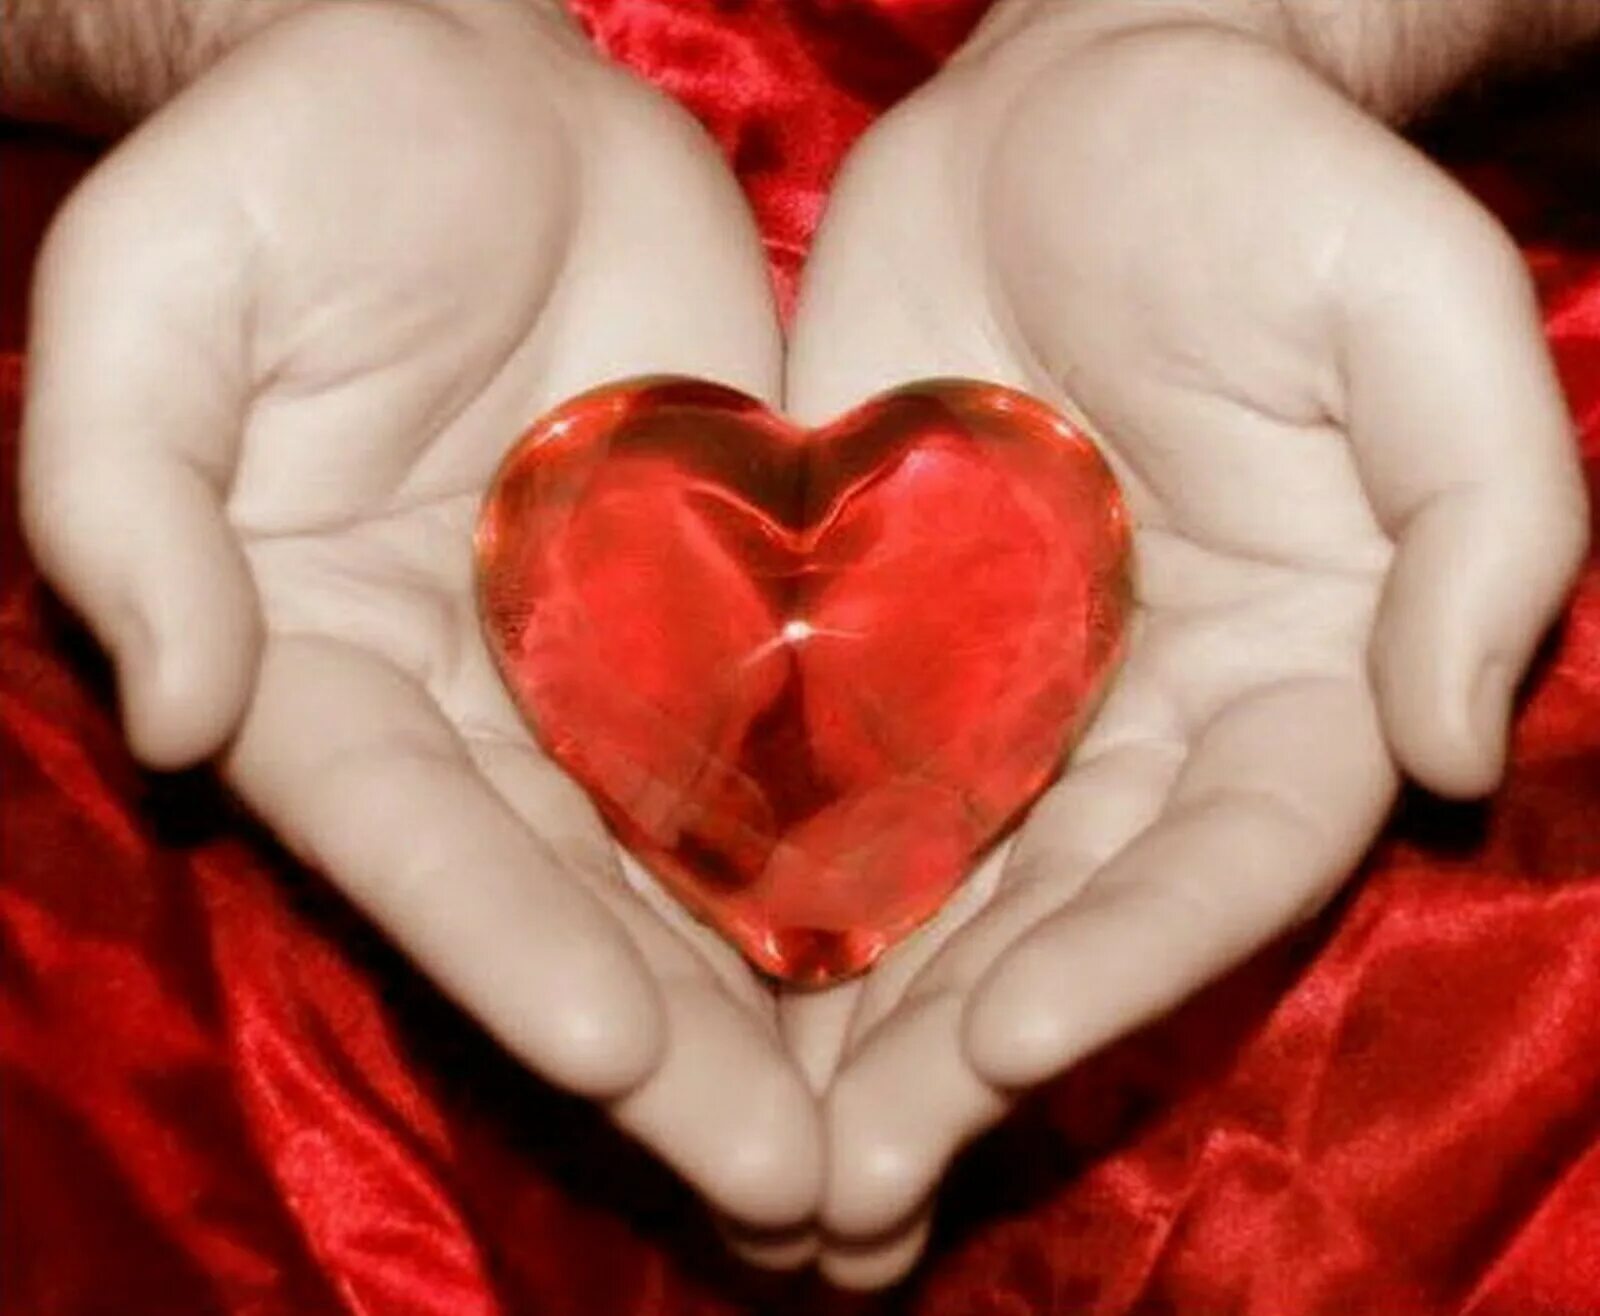 Сердцу больше не справиться как его проси. Большое сердце для любимой. Бьющееся сердце в руках. Дарю сердце. Сепдцемв руках.